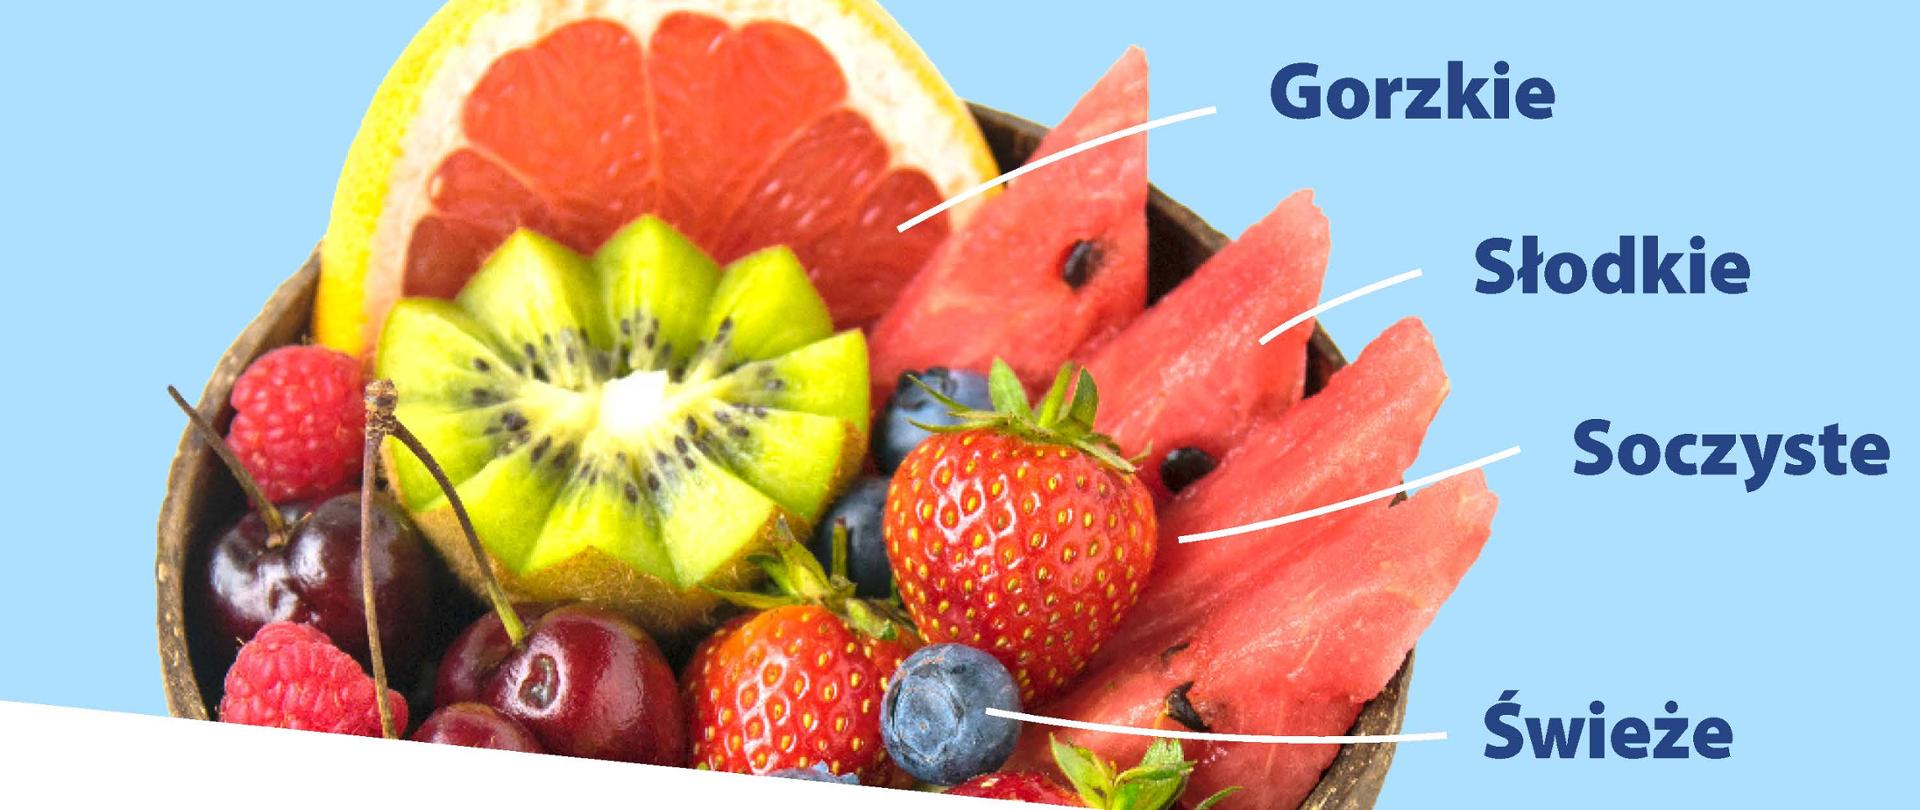 Zdjęcie przedstawia miskę owoców z tekstem "Bezpieczna żywność - pewny wybór"